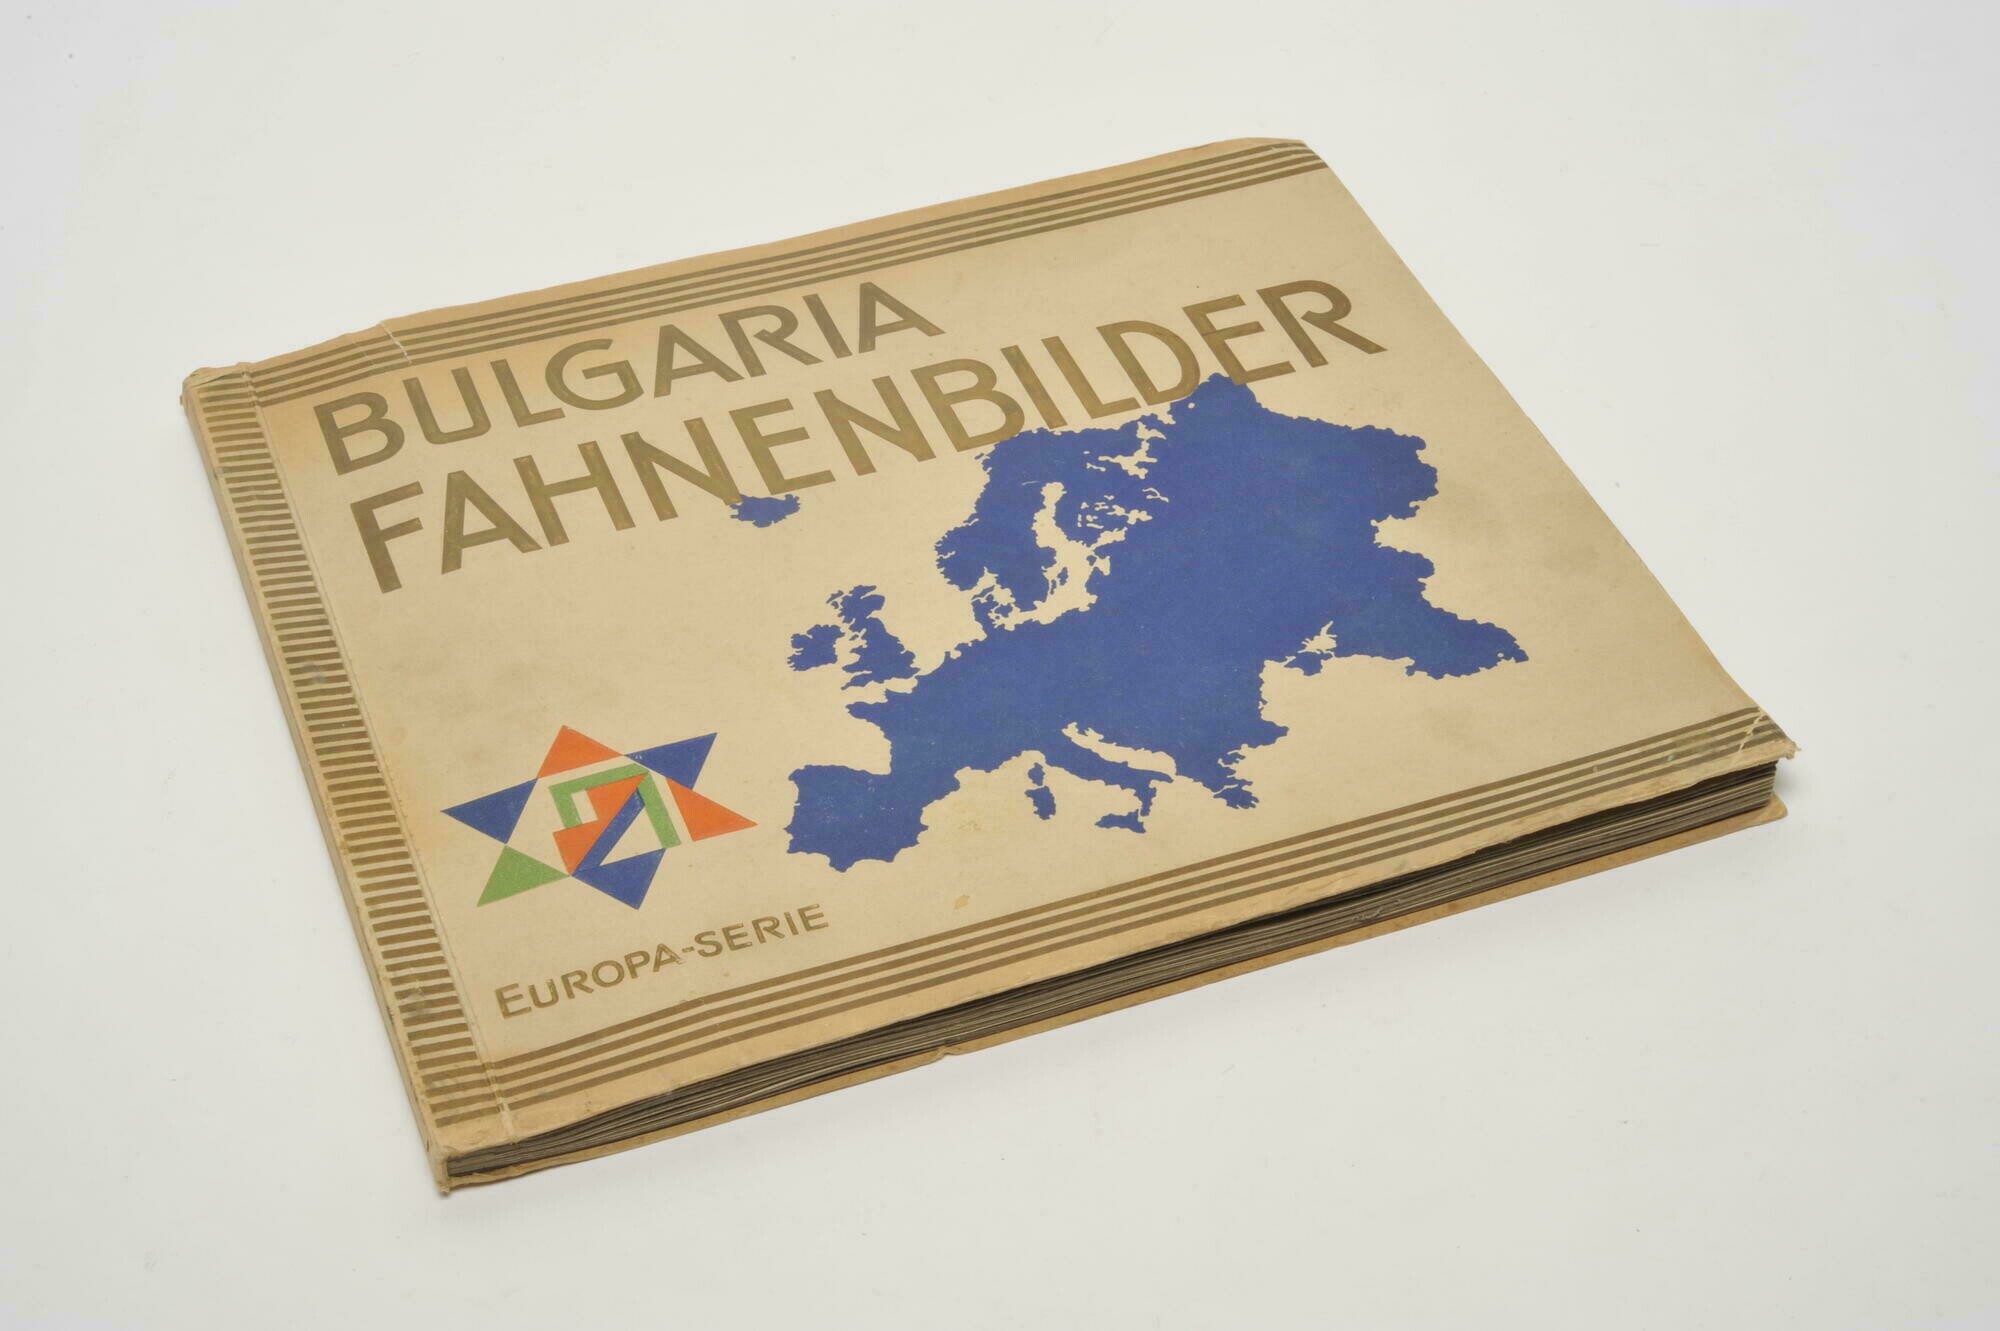 Bulgaria Fahnenbilder. Flaggen der Welt - Europa (Album 1) (Stadtmuseum Dresden CC BY-NC-ND)